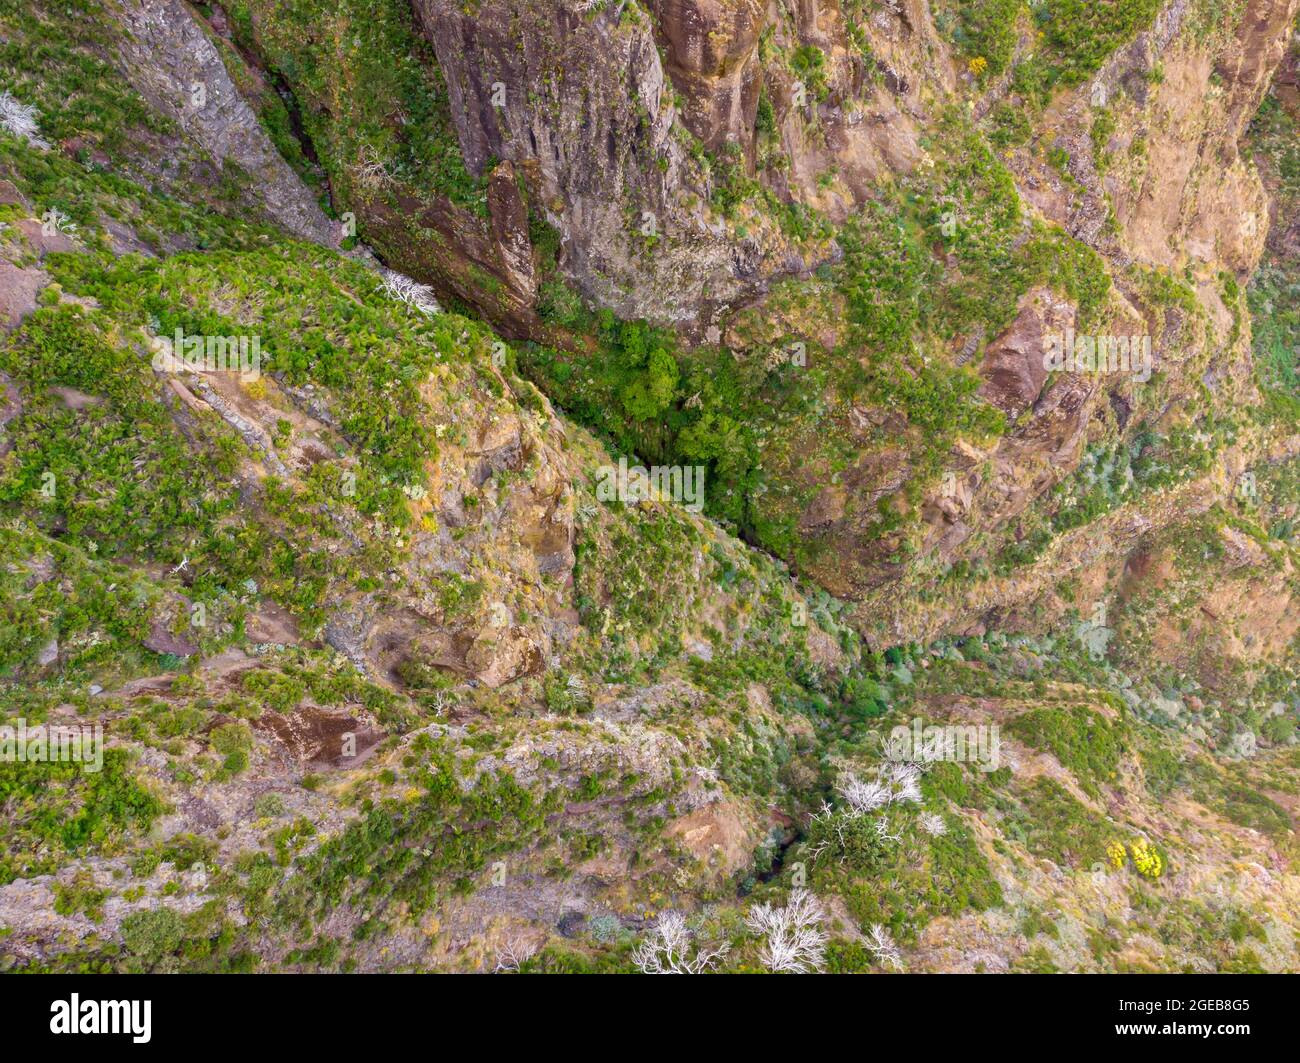 Vista dall'alto delle scarse vegetazioni che crescono in ambienti vulcanici difficili. Foto Stock